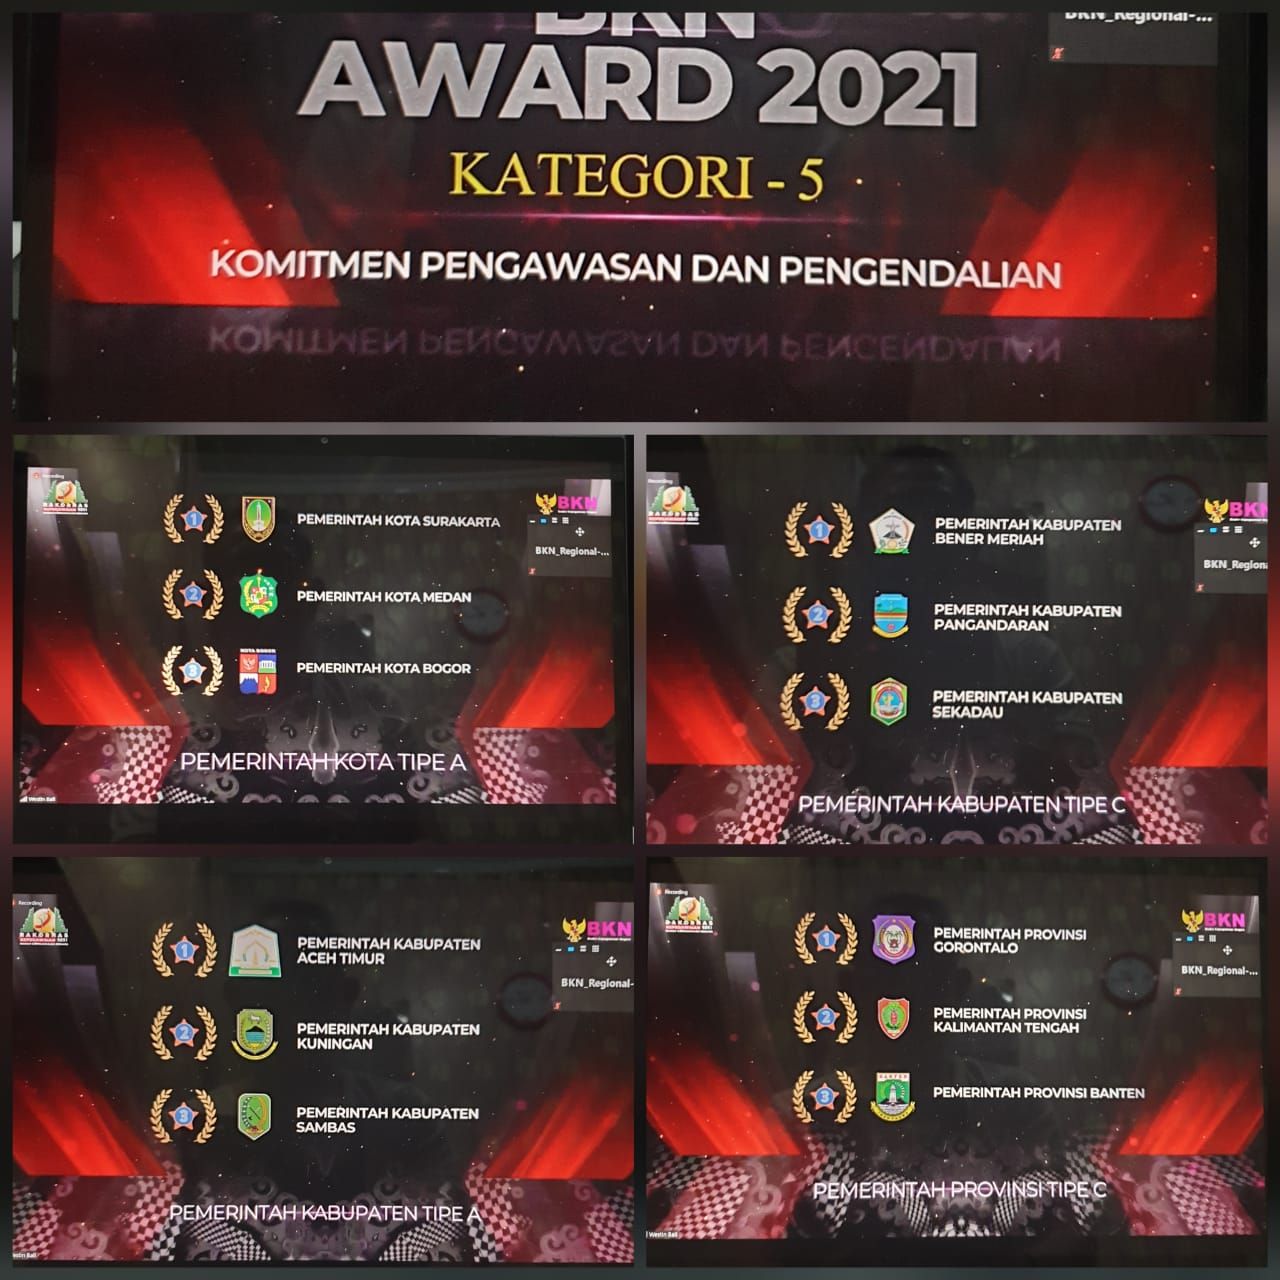 Juara 2 Kategori komitmen pengawasan dan pengendalian BKN Award 2021 